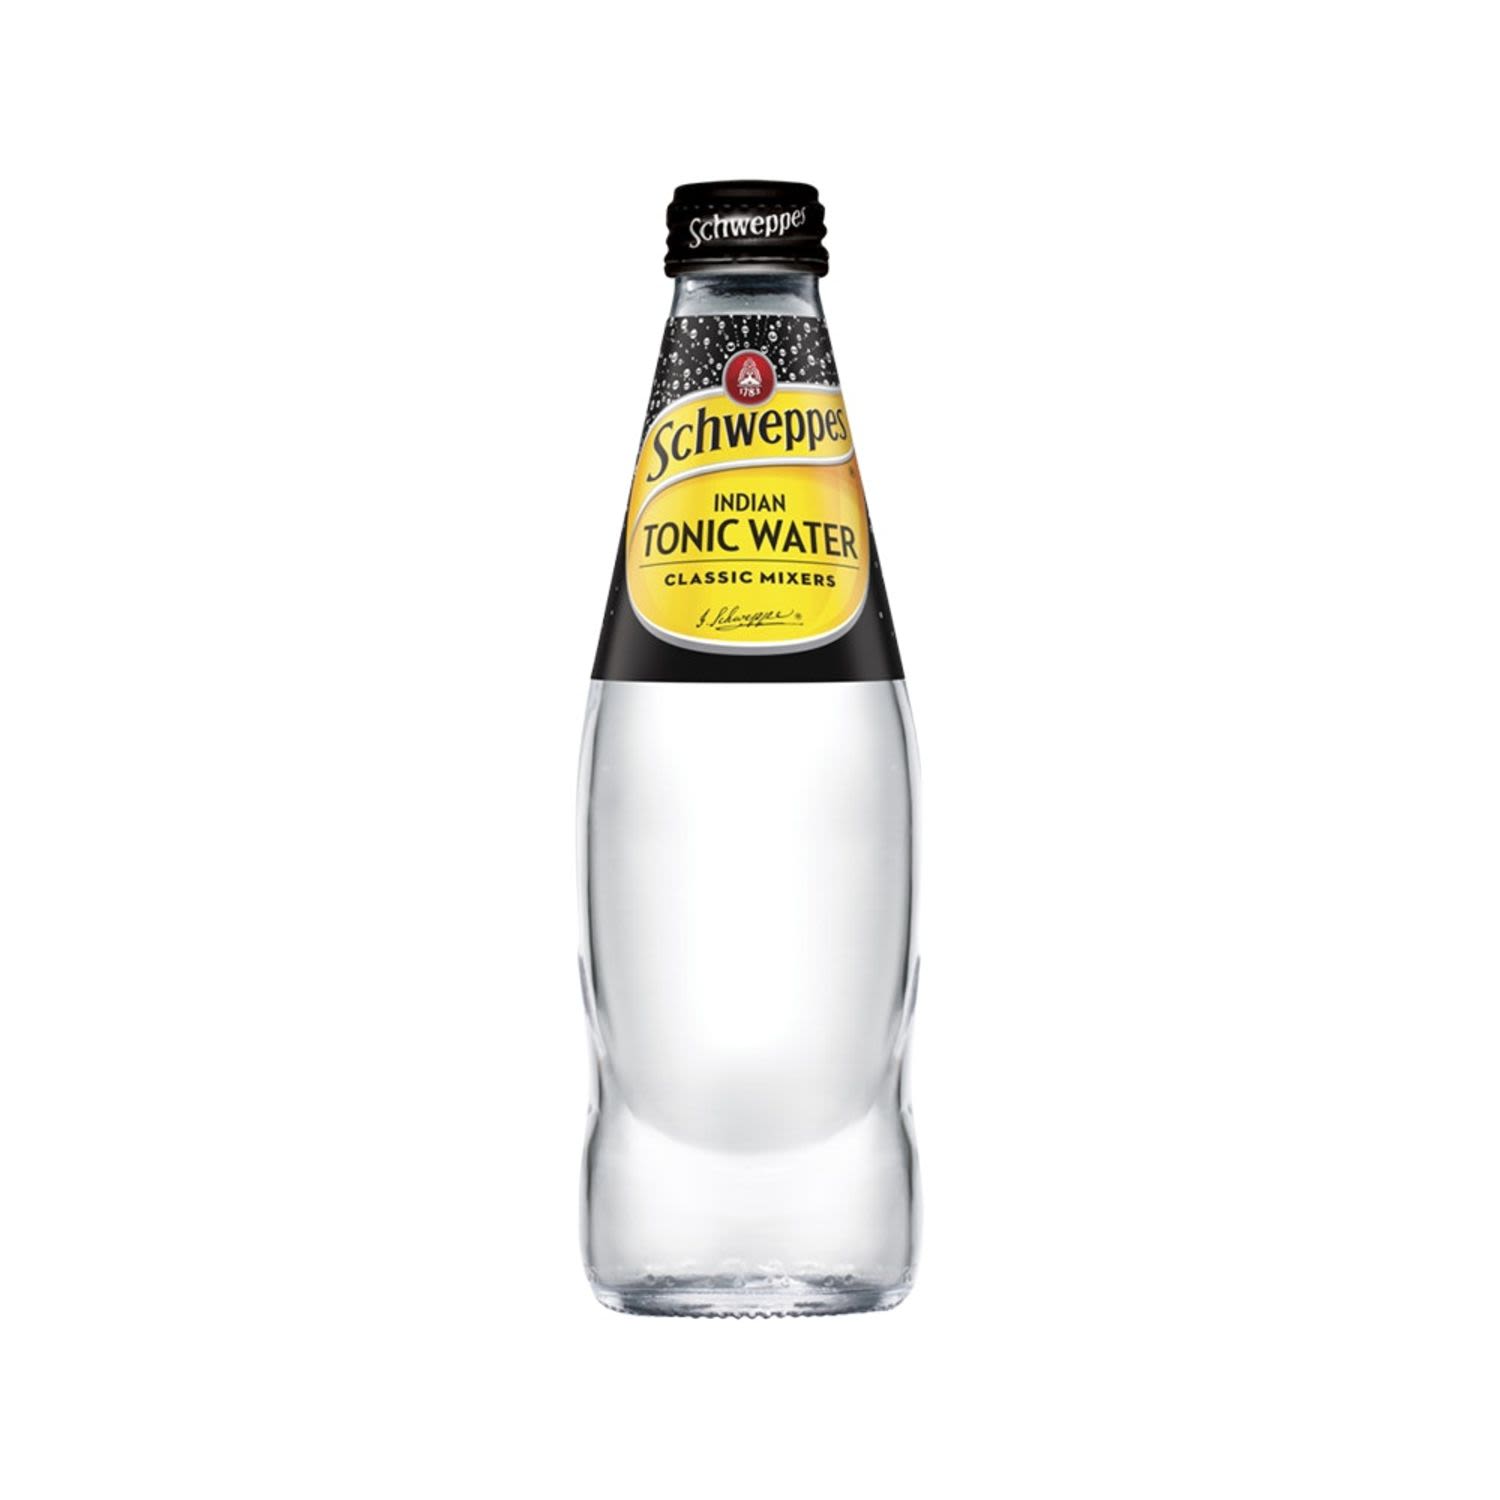 Schweppes Tonic Water 300mL Bottle